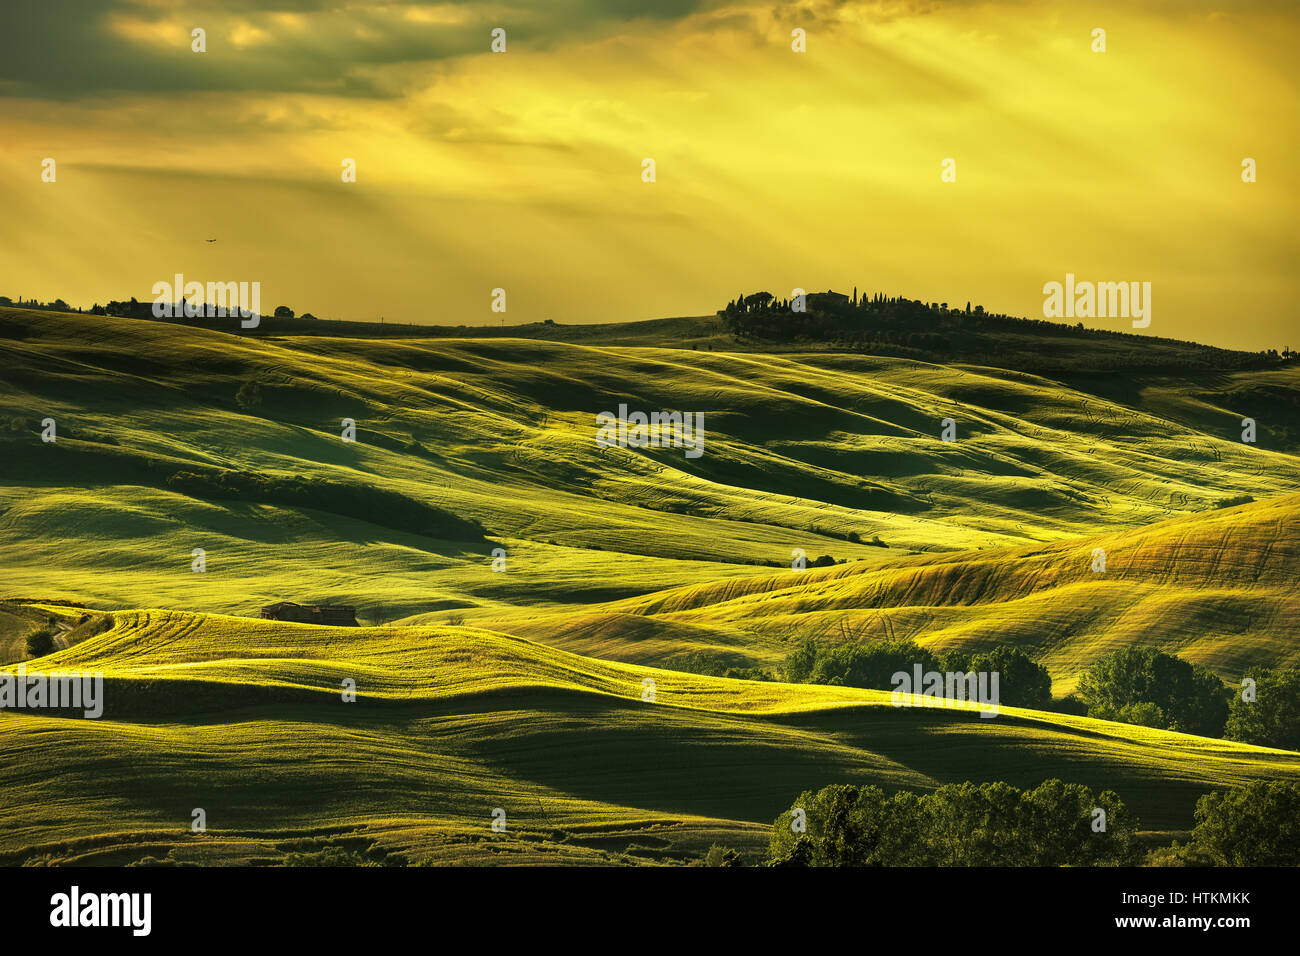 Tuscany Frühling, sanften Hügeln am Sonnenuntergang. Landschaft im ländlichen Raum. Grüne Wiesen und Ackerland. Italien, Europa Stockfoto